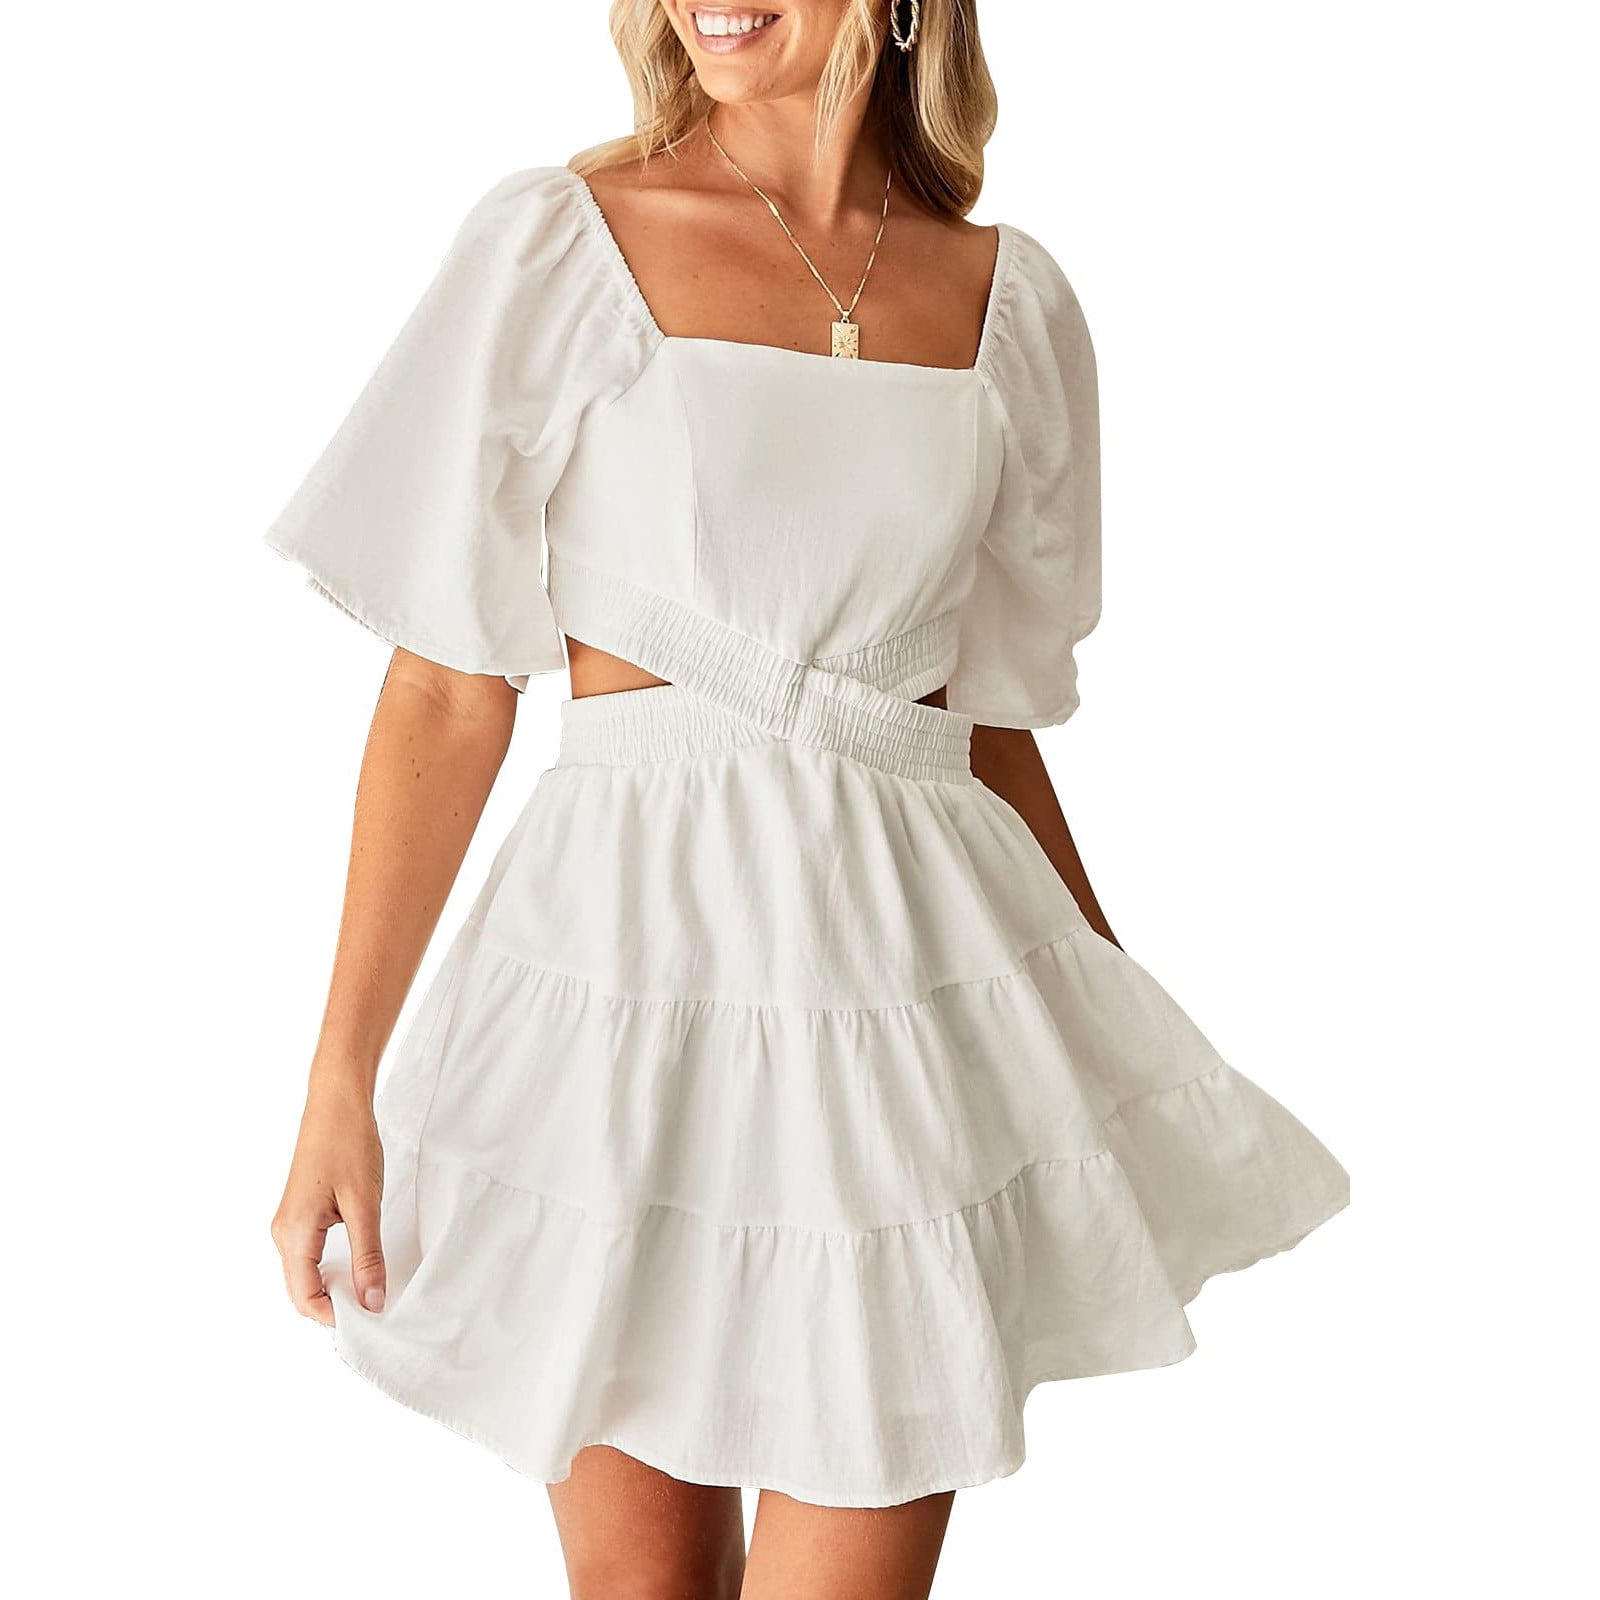 uublik Women's Square Neck White Dress Short Sleeve Summer Dresses ...